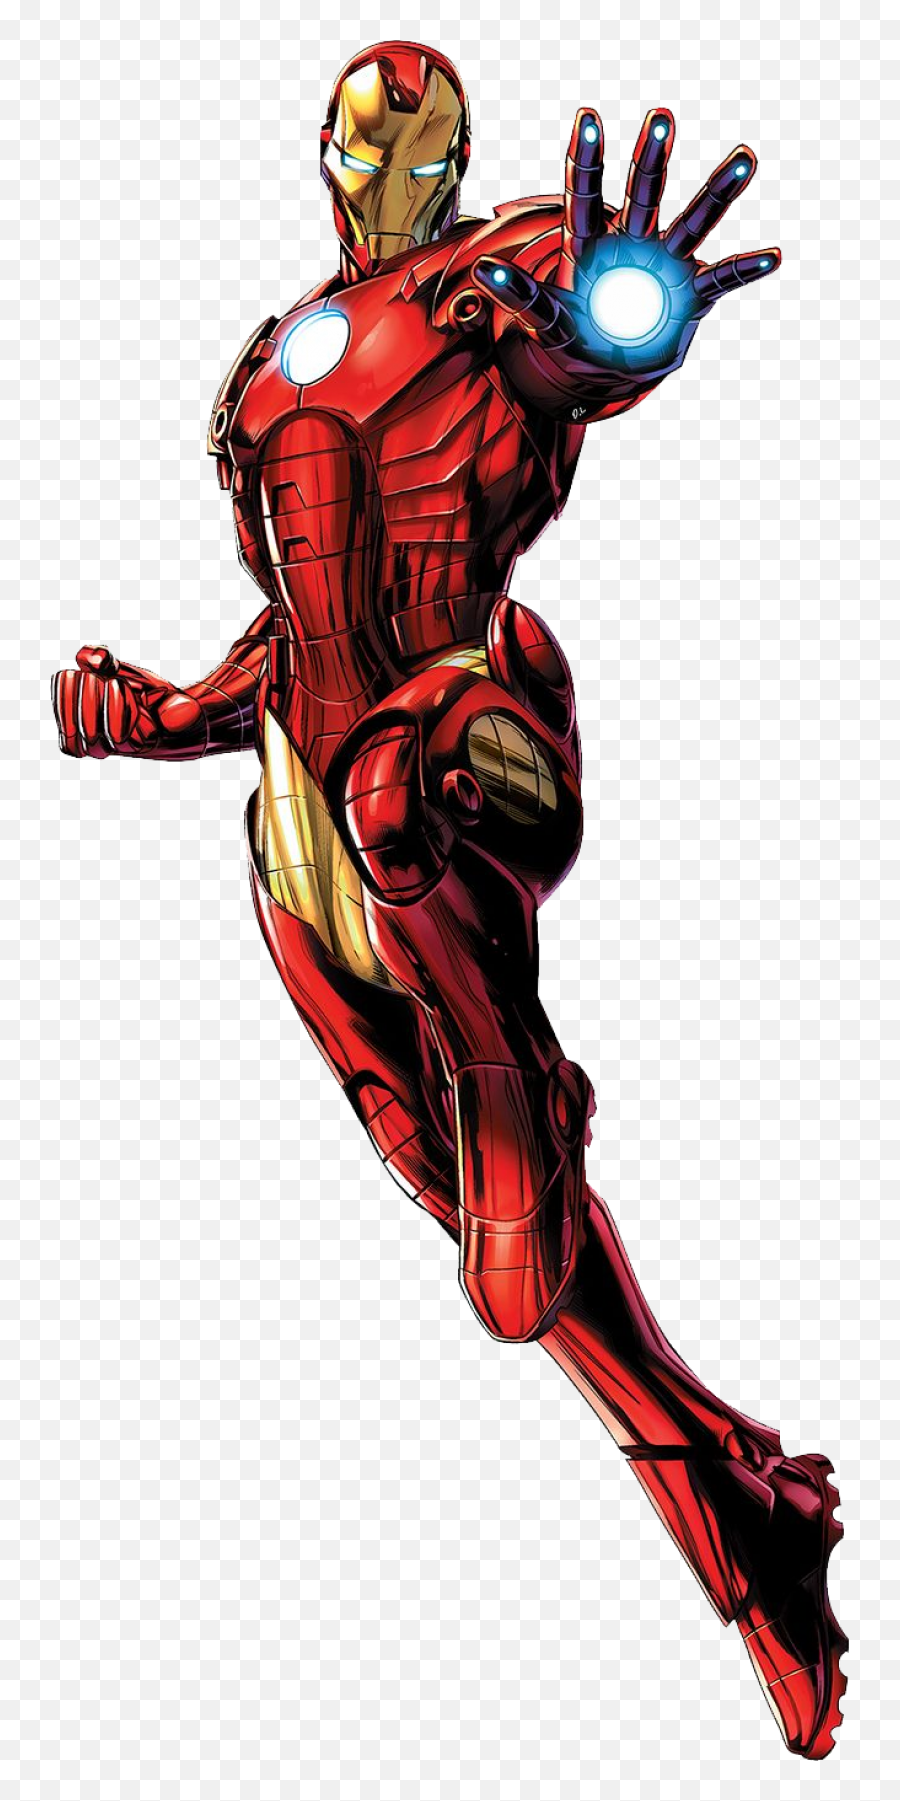 Ironman Png - Iron Man Marvel Avengers,Iron Man Transparent